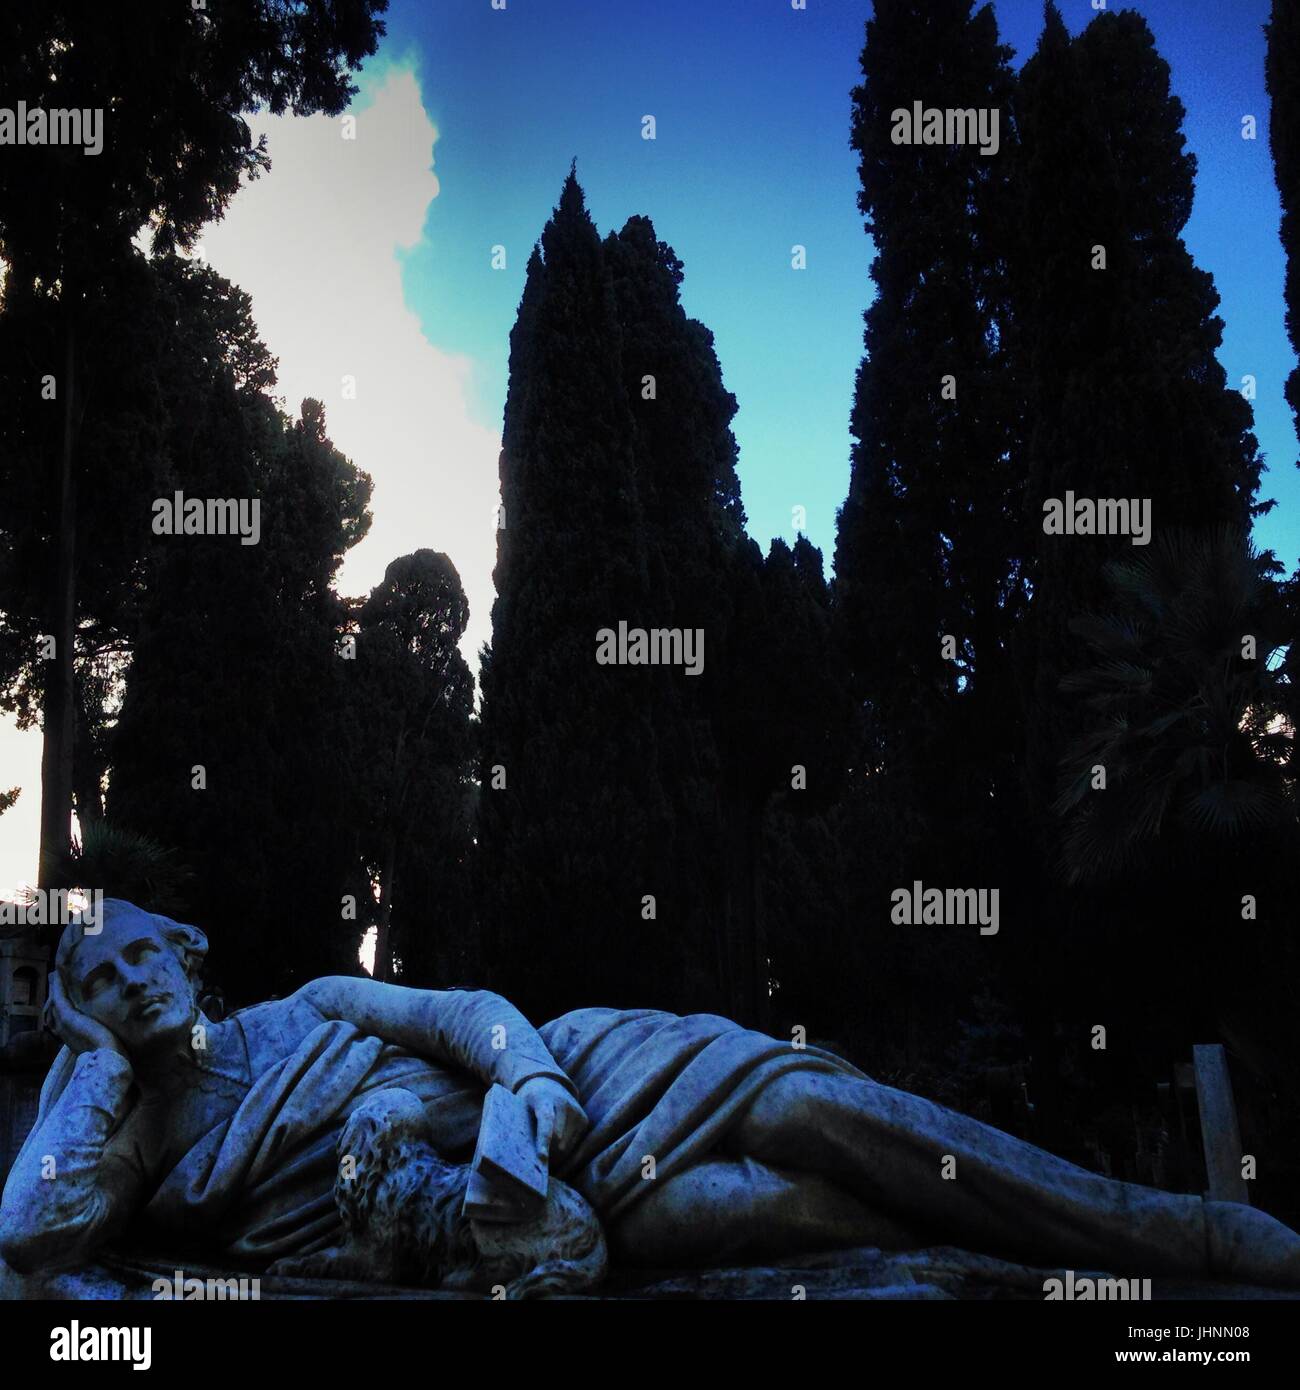 Goodnight, statue in Protestant Cemetery, Cimitero Acattolico, Ostiense  quarter - Rome    Credit © Anna Retico/Sintesi/Alamy Stock Photo Stock Photo